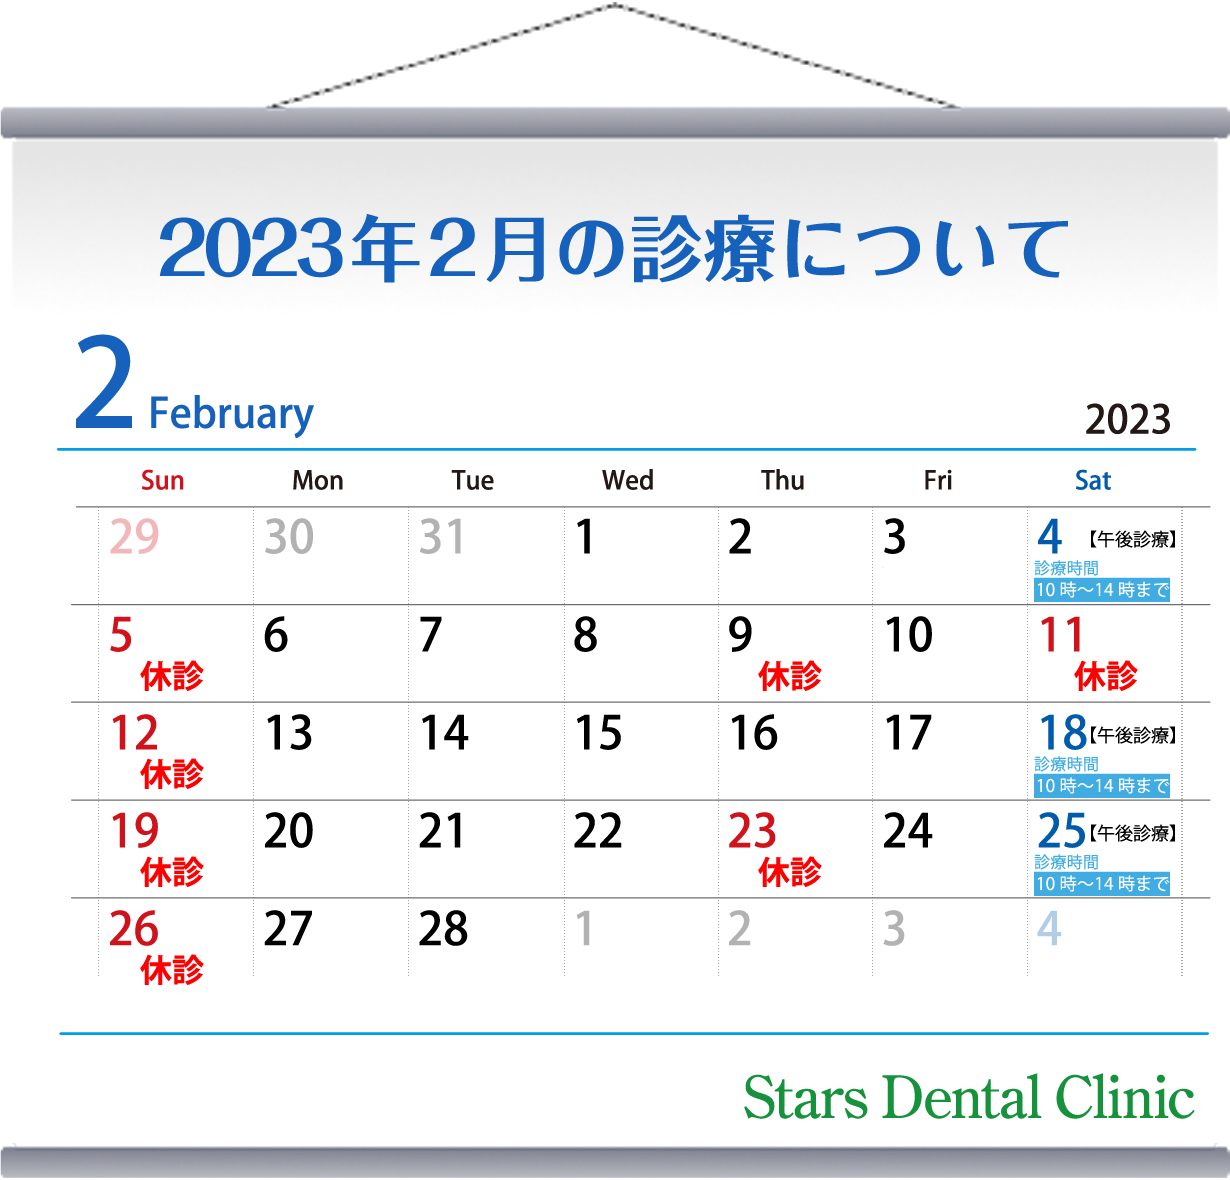 2023年2月の診療について